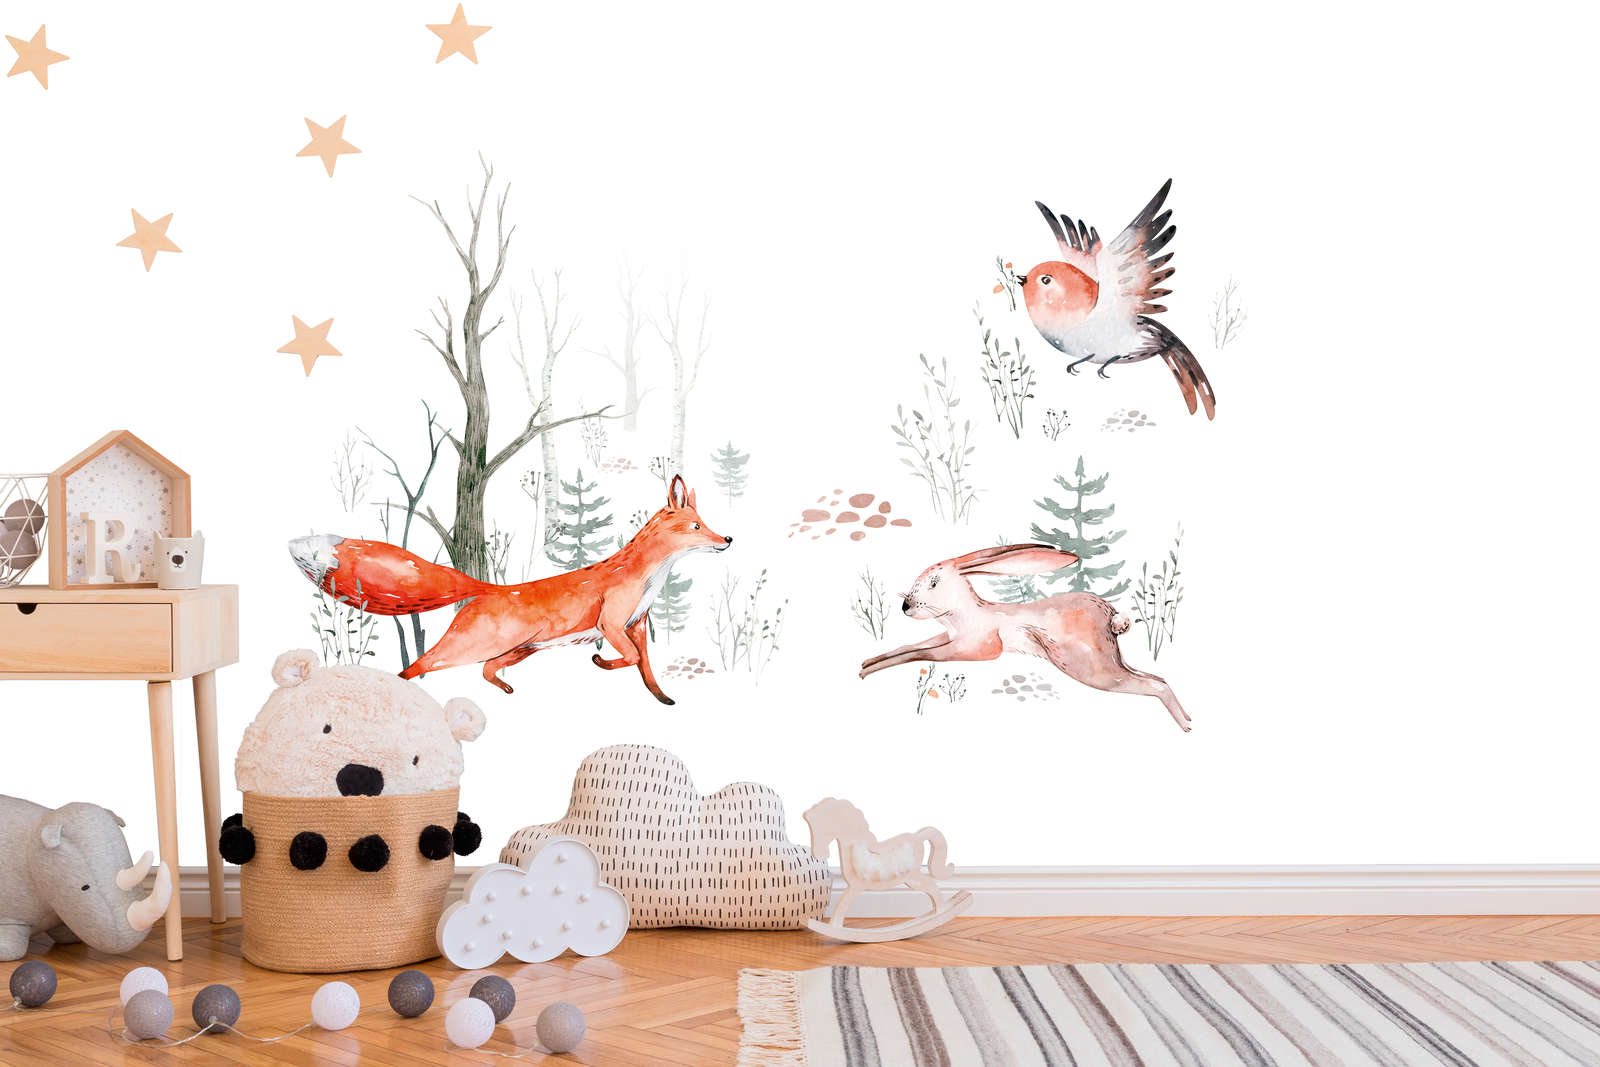             Mural de pared con animales en el bosque para la habitación de los niños - Naranja, Verde, Blanco
        